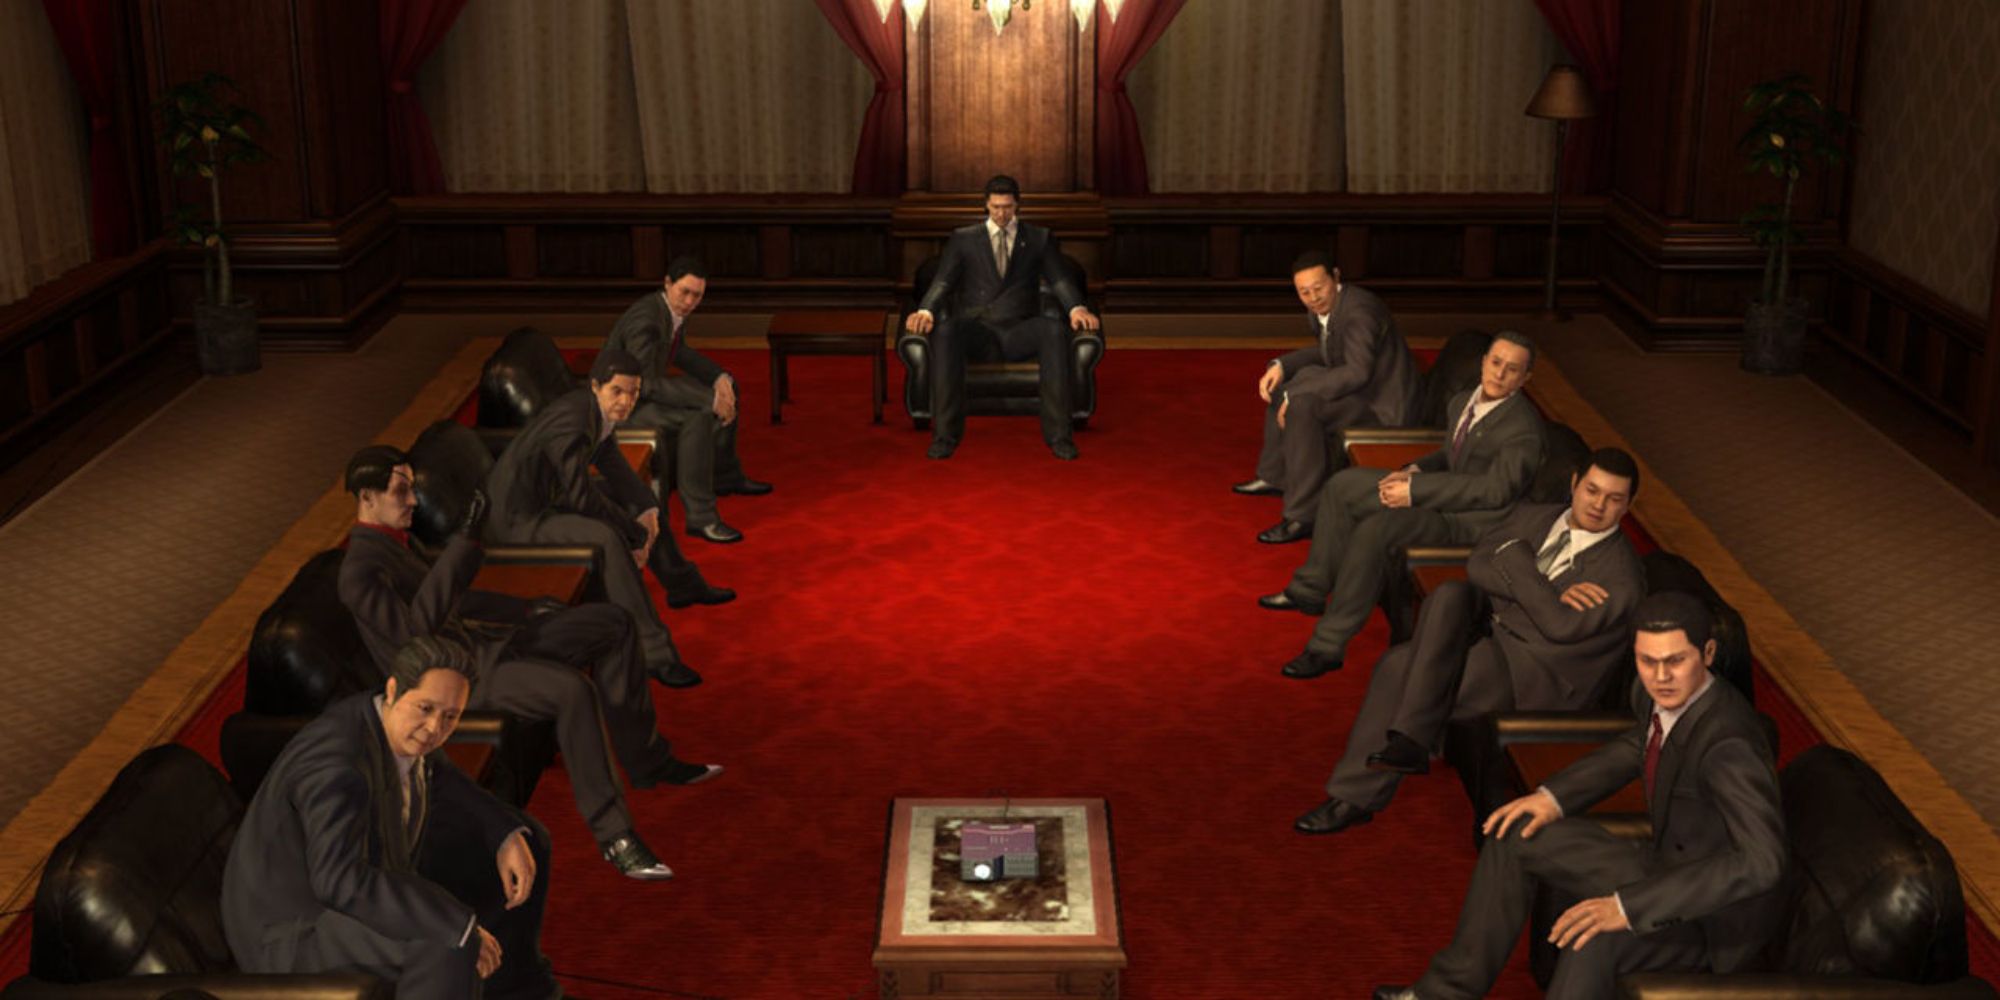 Yakuza Screenshot Of Tojo Clan Meeting